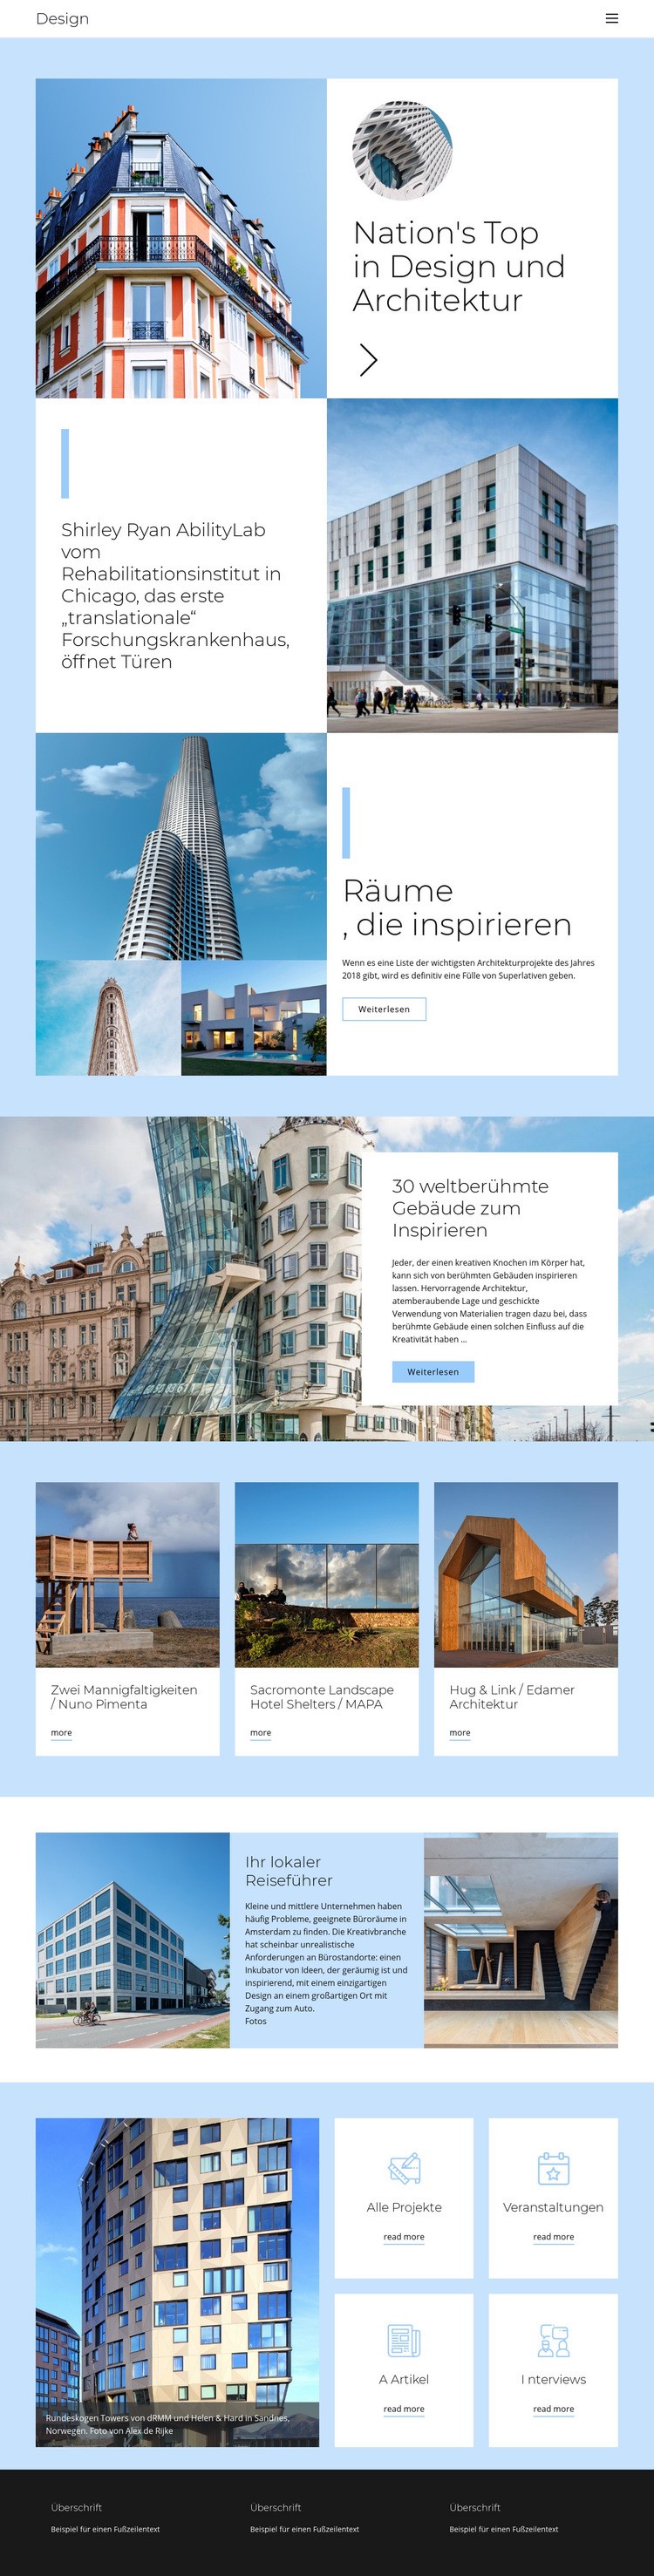 Architektur Stadtführer Website design